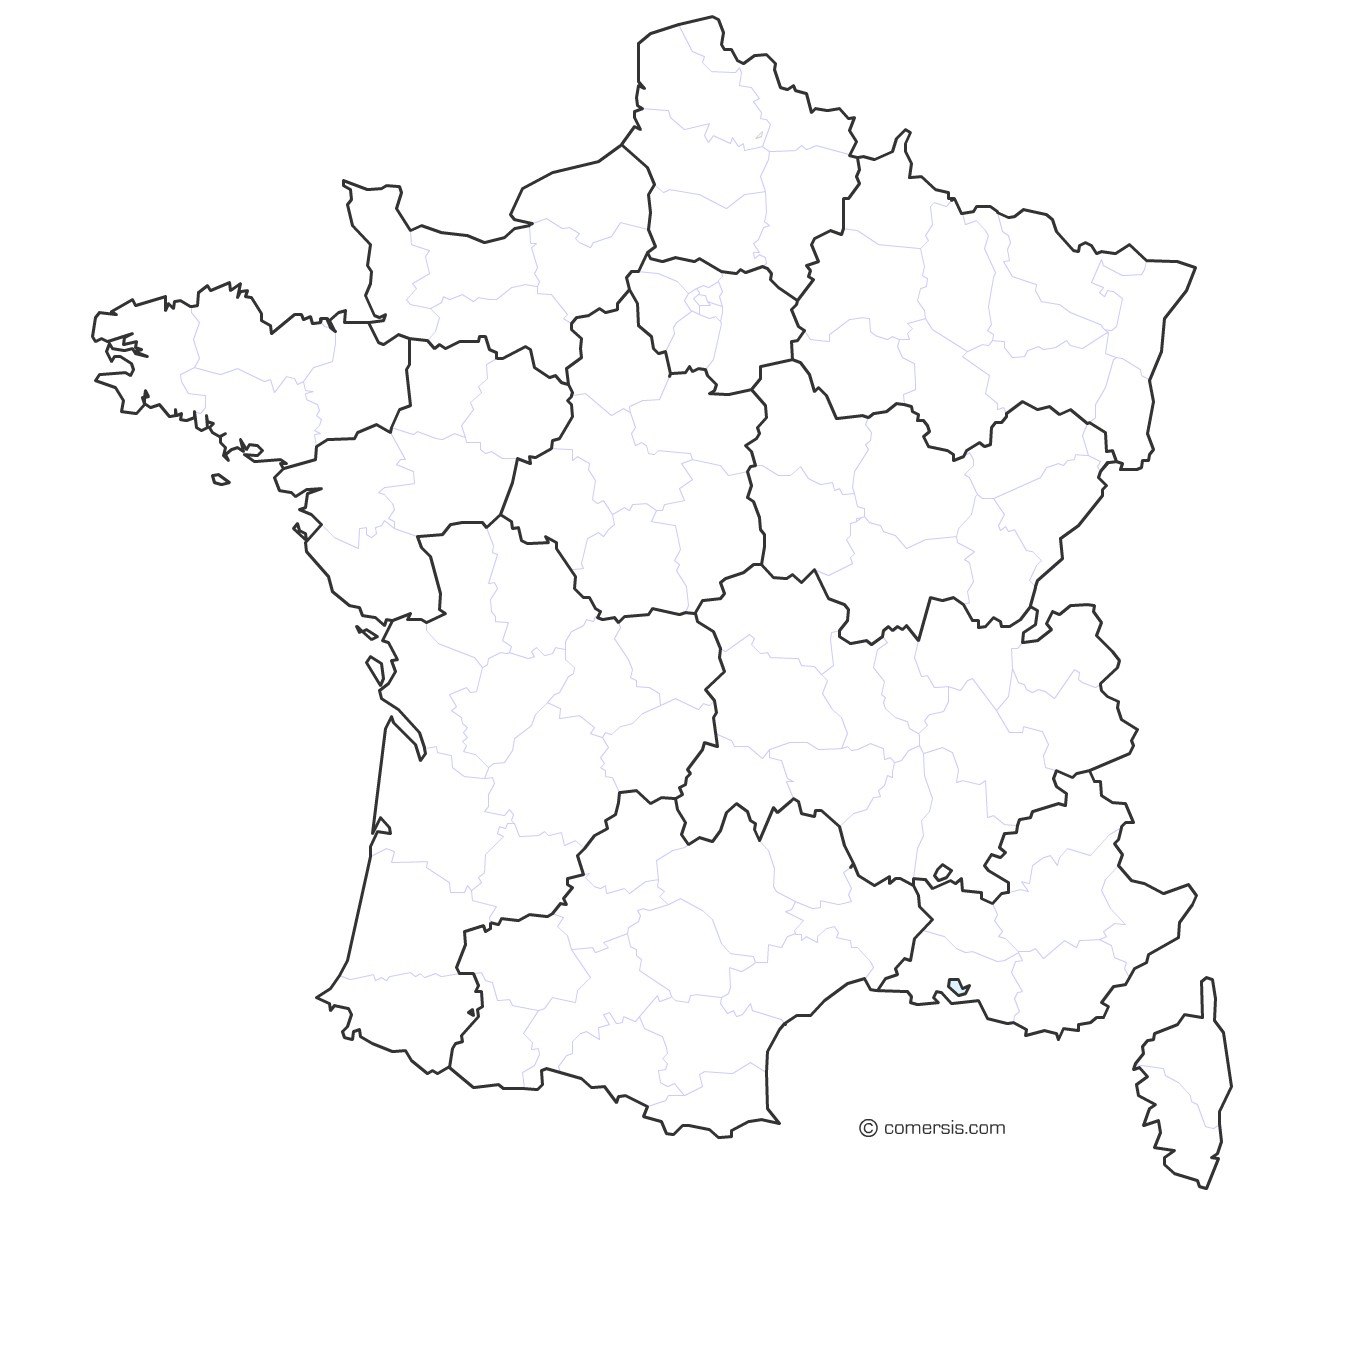 204E Carte France Region | Wiring Library à Carte De France Des Régions Vierge